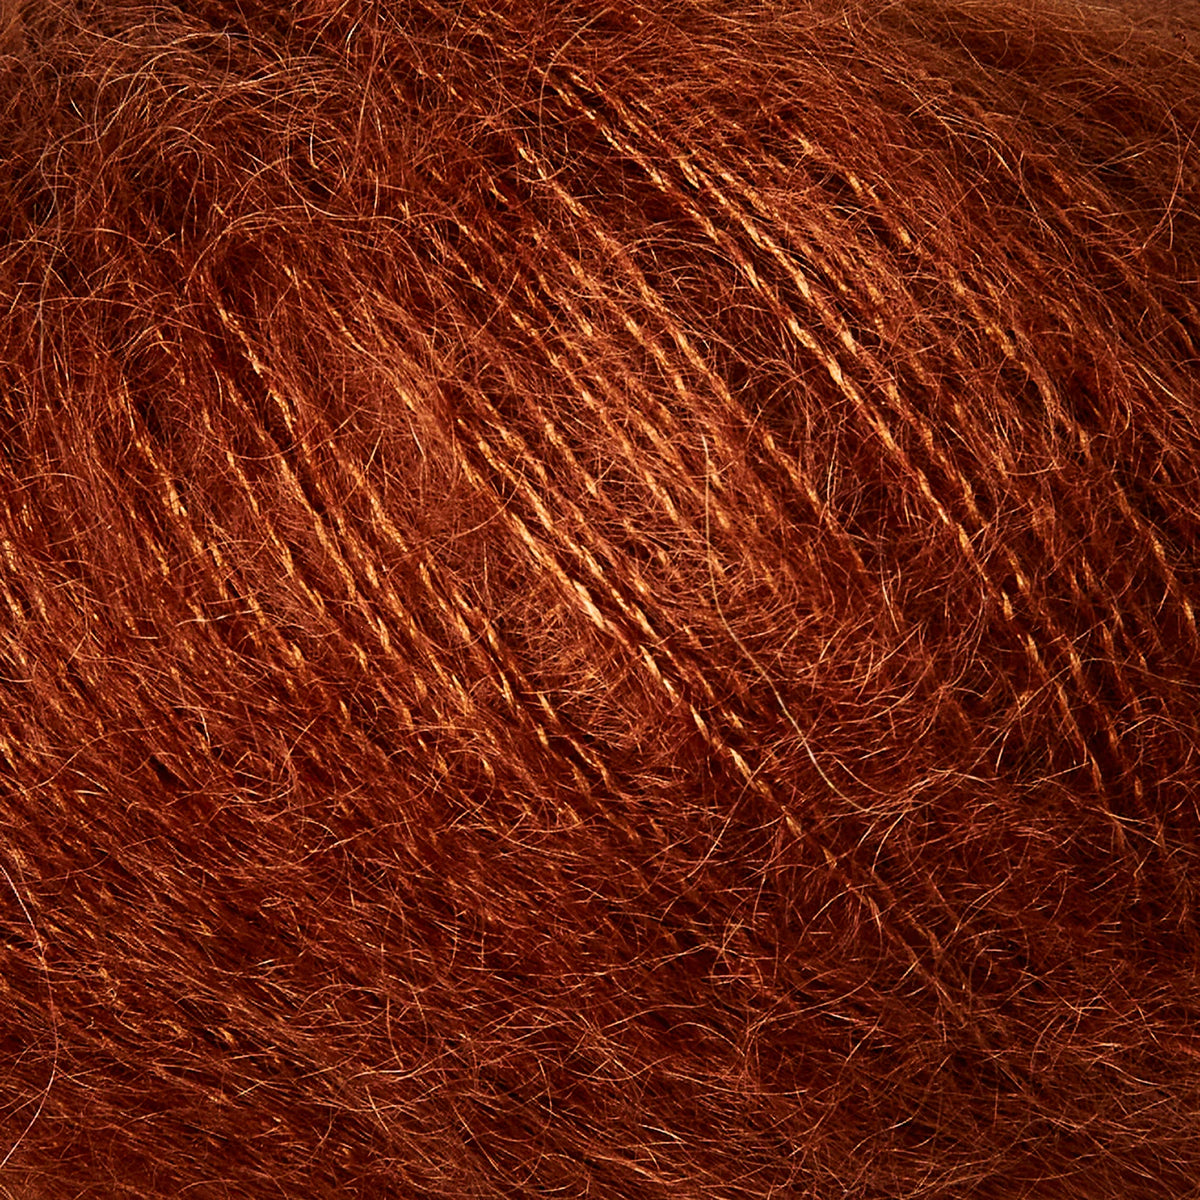 Rust / Rost - Soft Silk Mohair